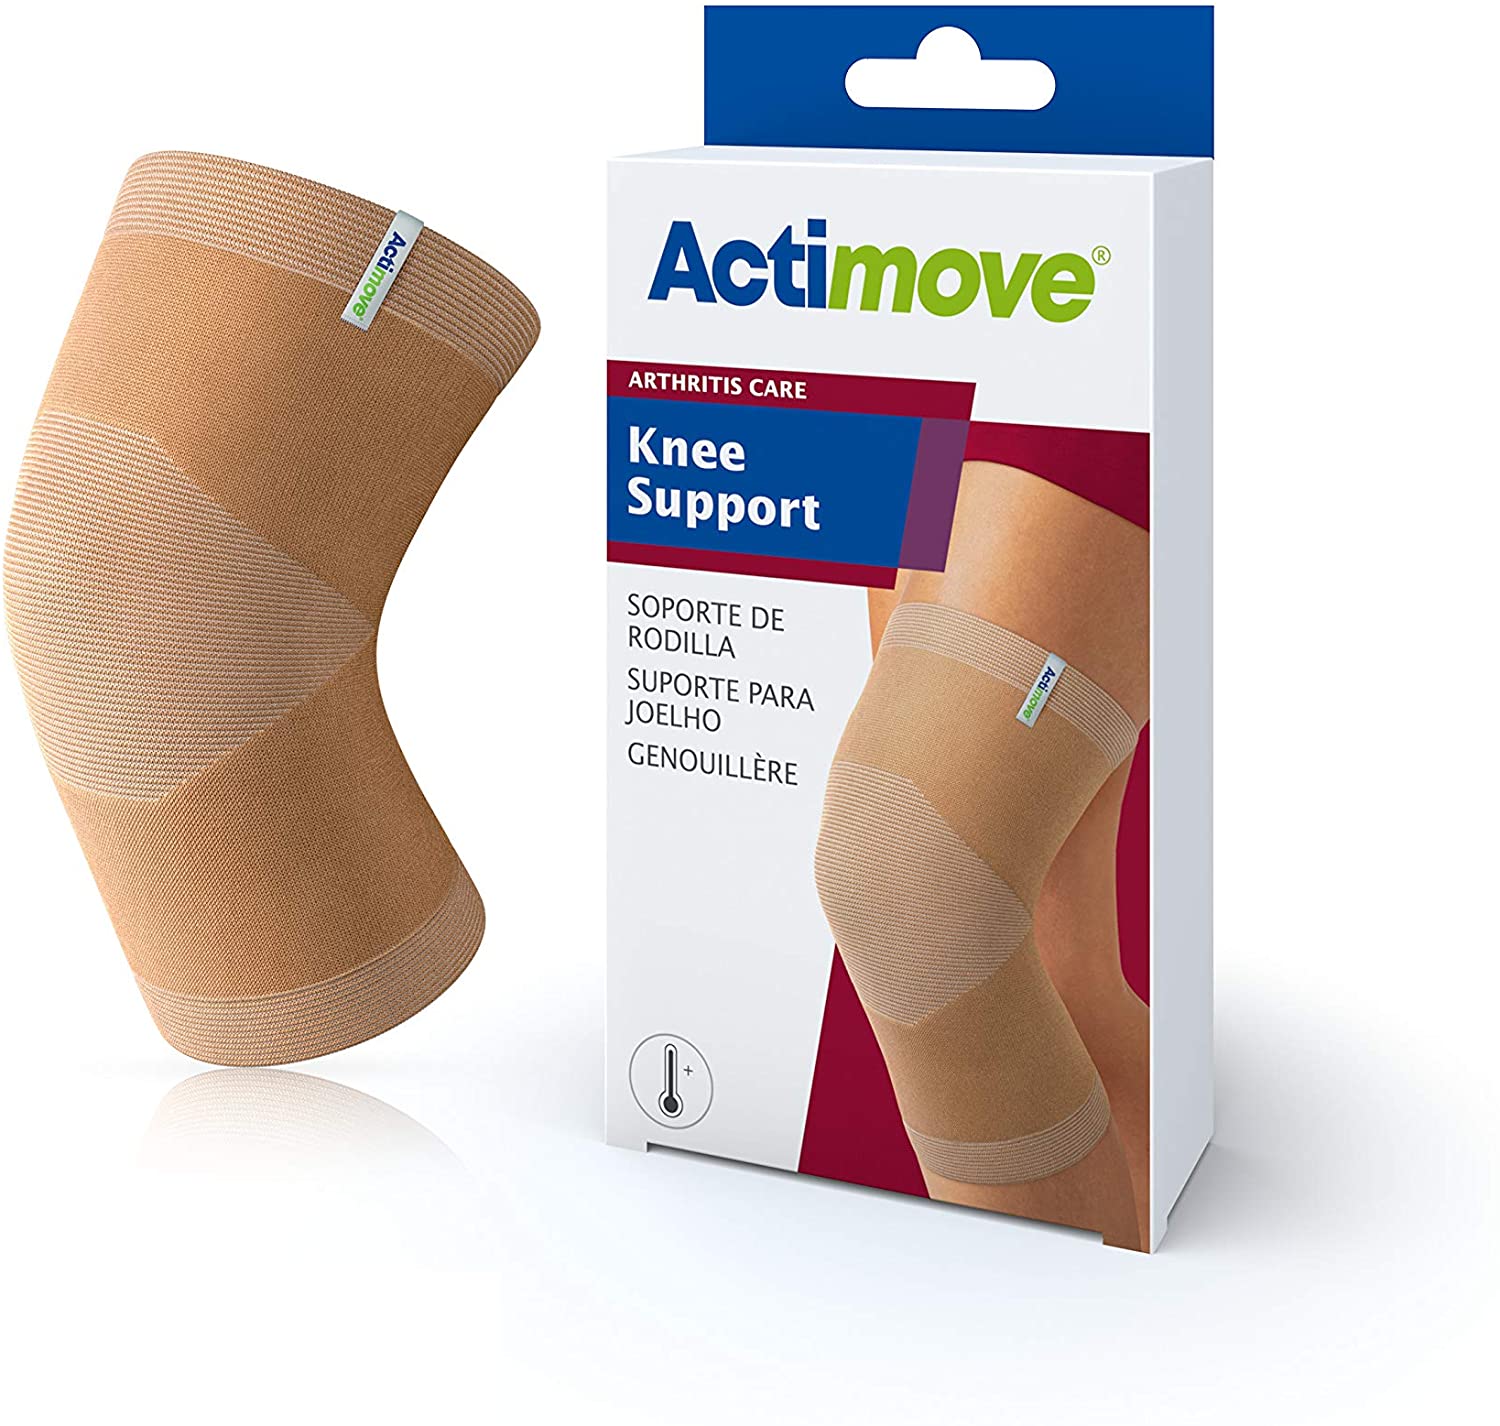 Actimove Arthritis Pain Relief Support, Knee, Sm, Beige - Ea/1